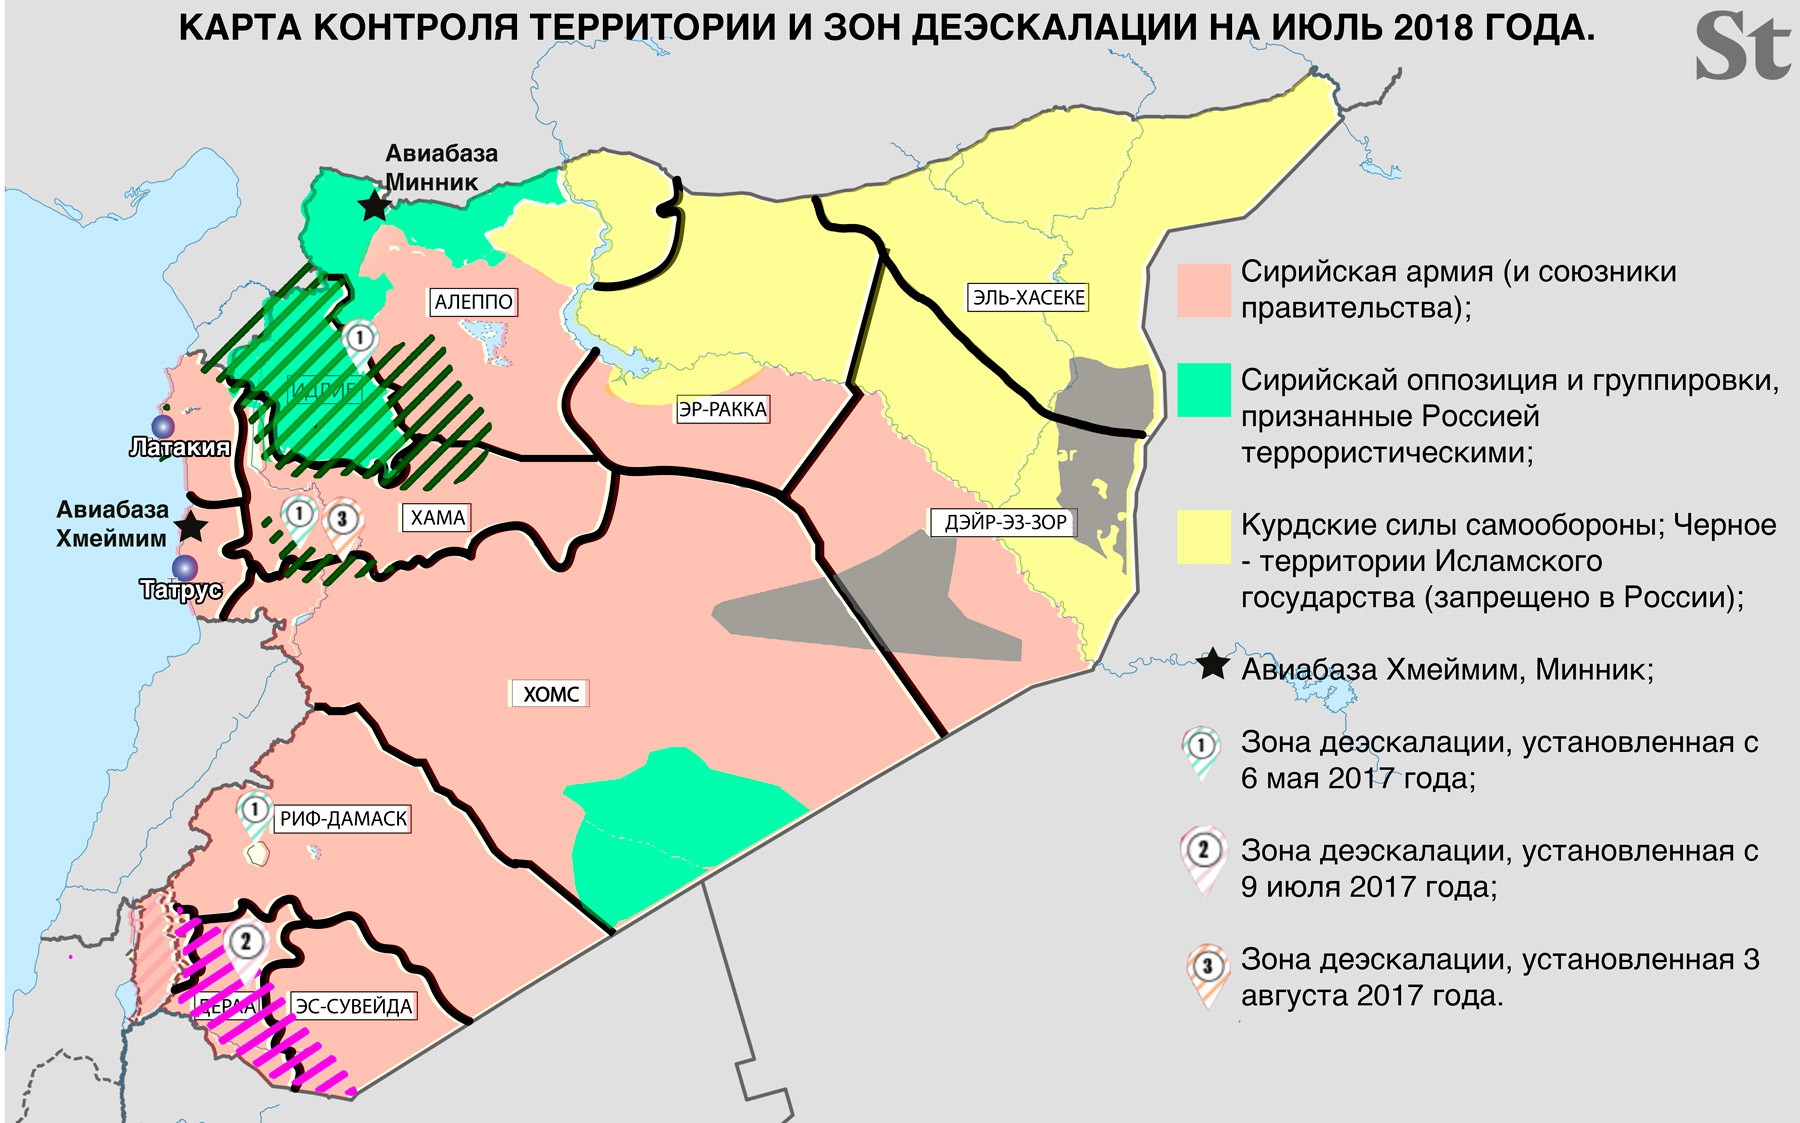 Обзор карты сирии сегодня. Карта Сирии с зонами контроля. Территория Сирии подконтрольная Асаду на сегодня карта 2022. Карта Сирии с зонами контроля 2022. Сирия территория контролируемая Асадом карта 2022.